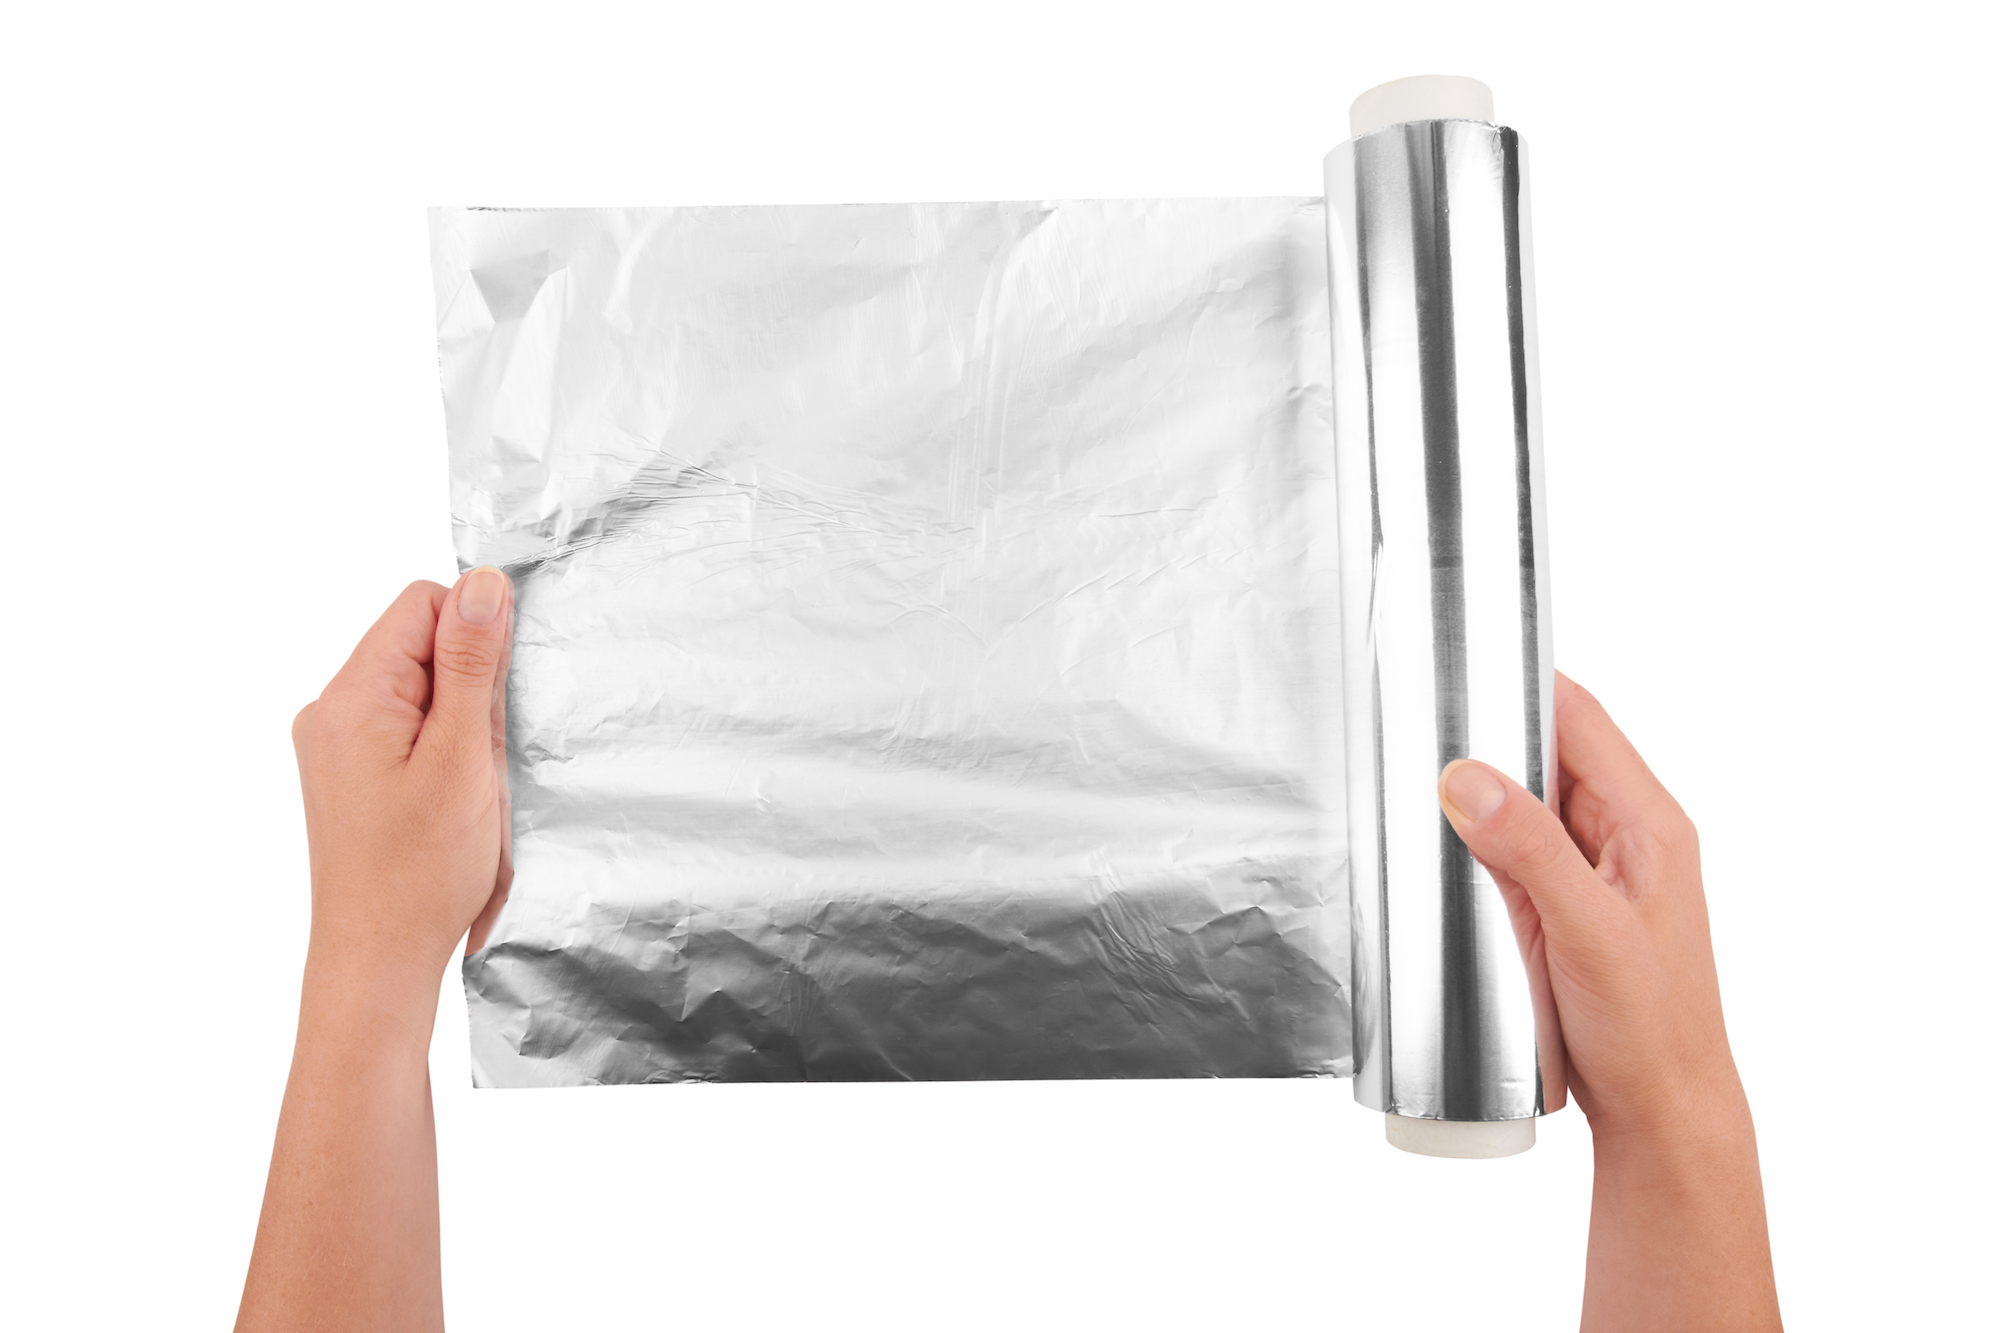 is aluminum foil safe